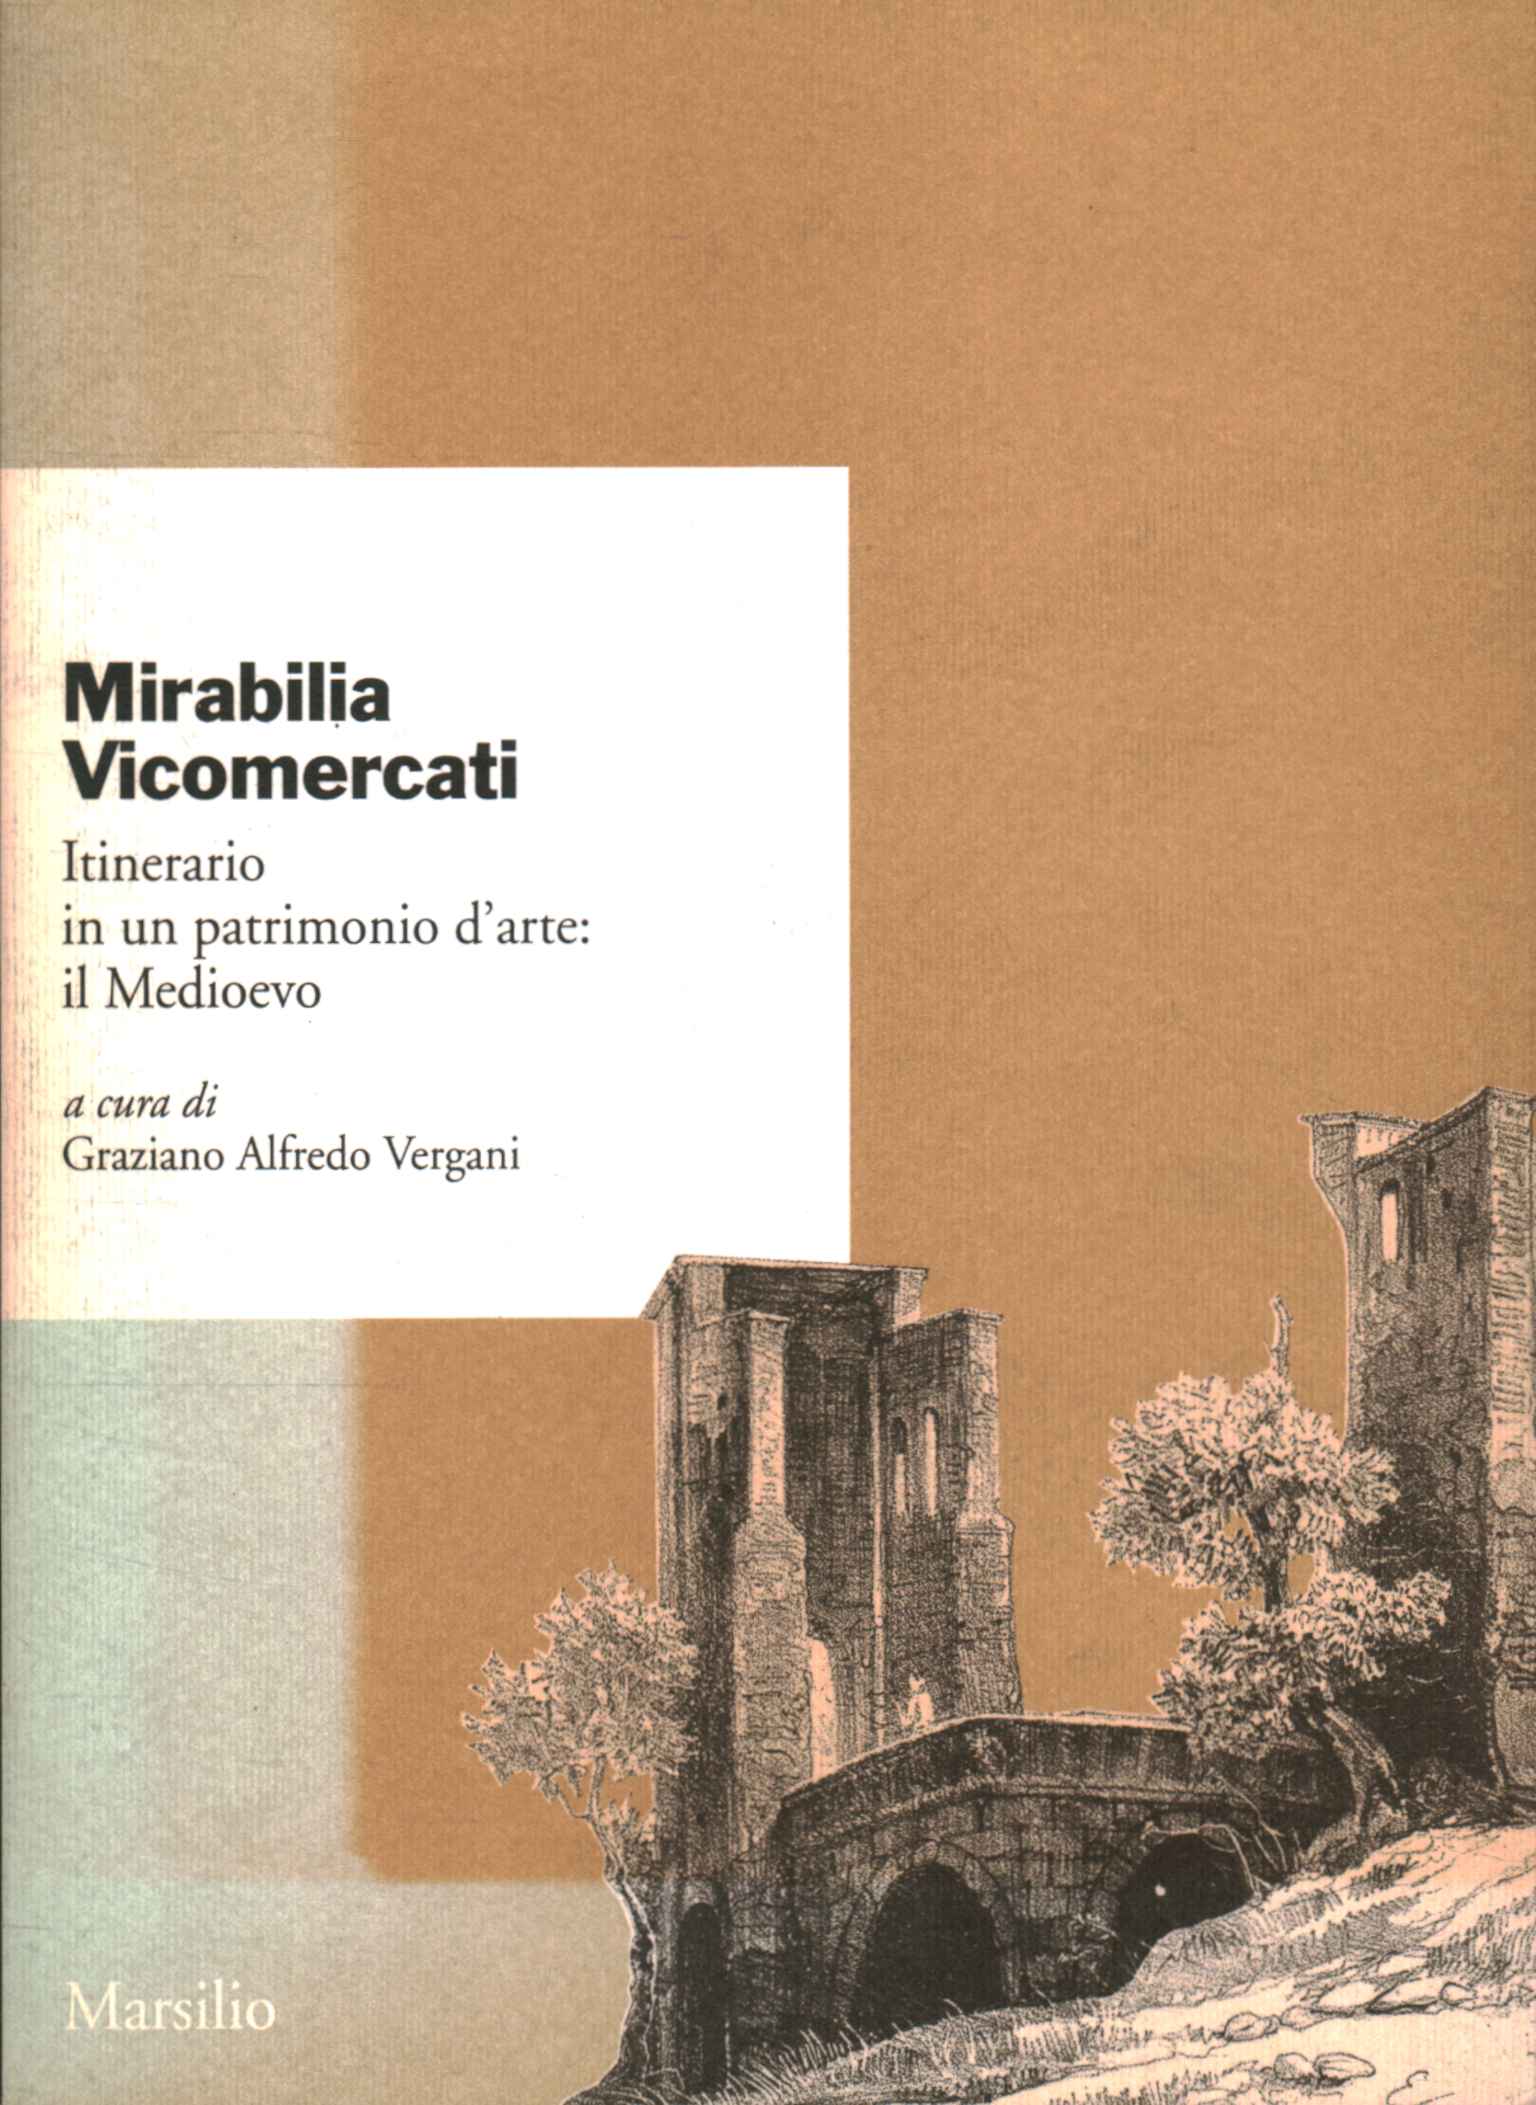 Mirabilia Vicomercati. Itinerario in un